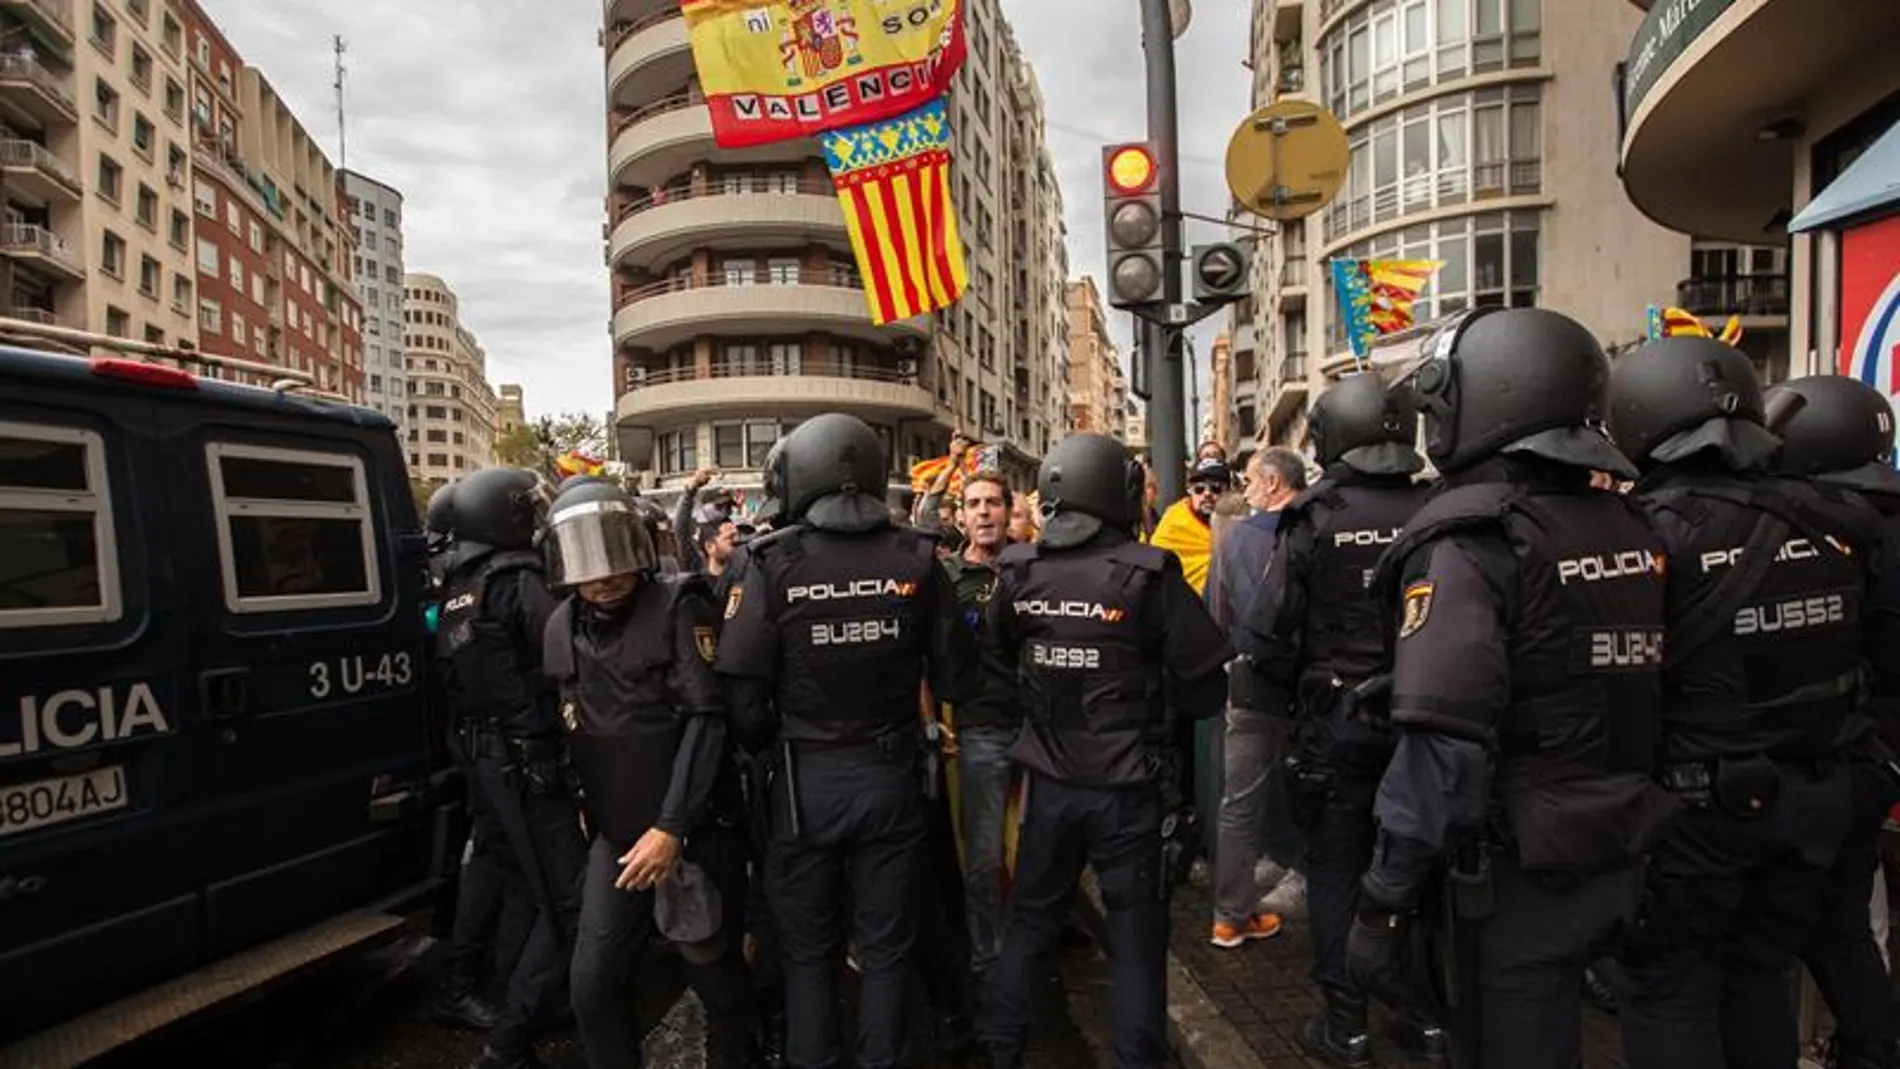 La Policía arrincona a la ultraderecha en la plaza de San Agustín de València